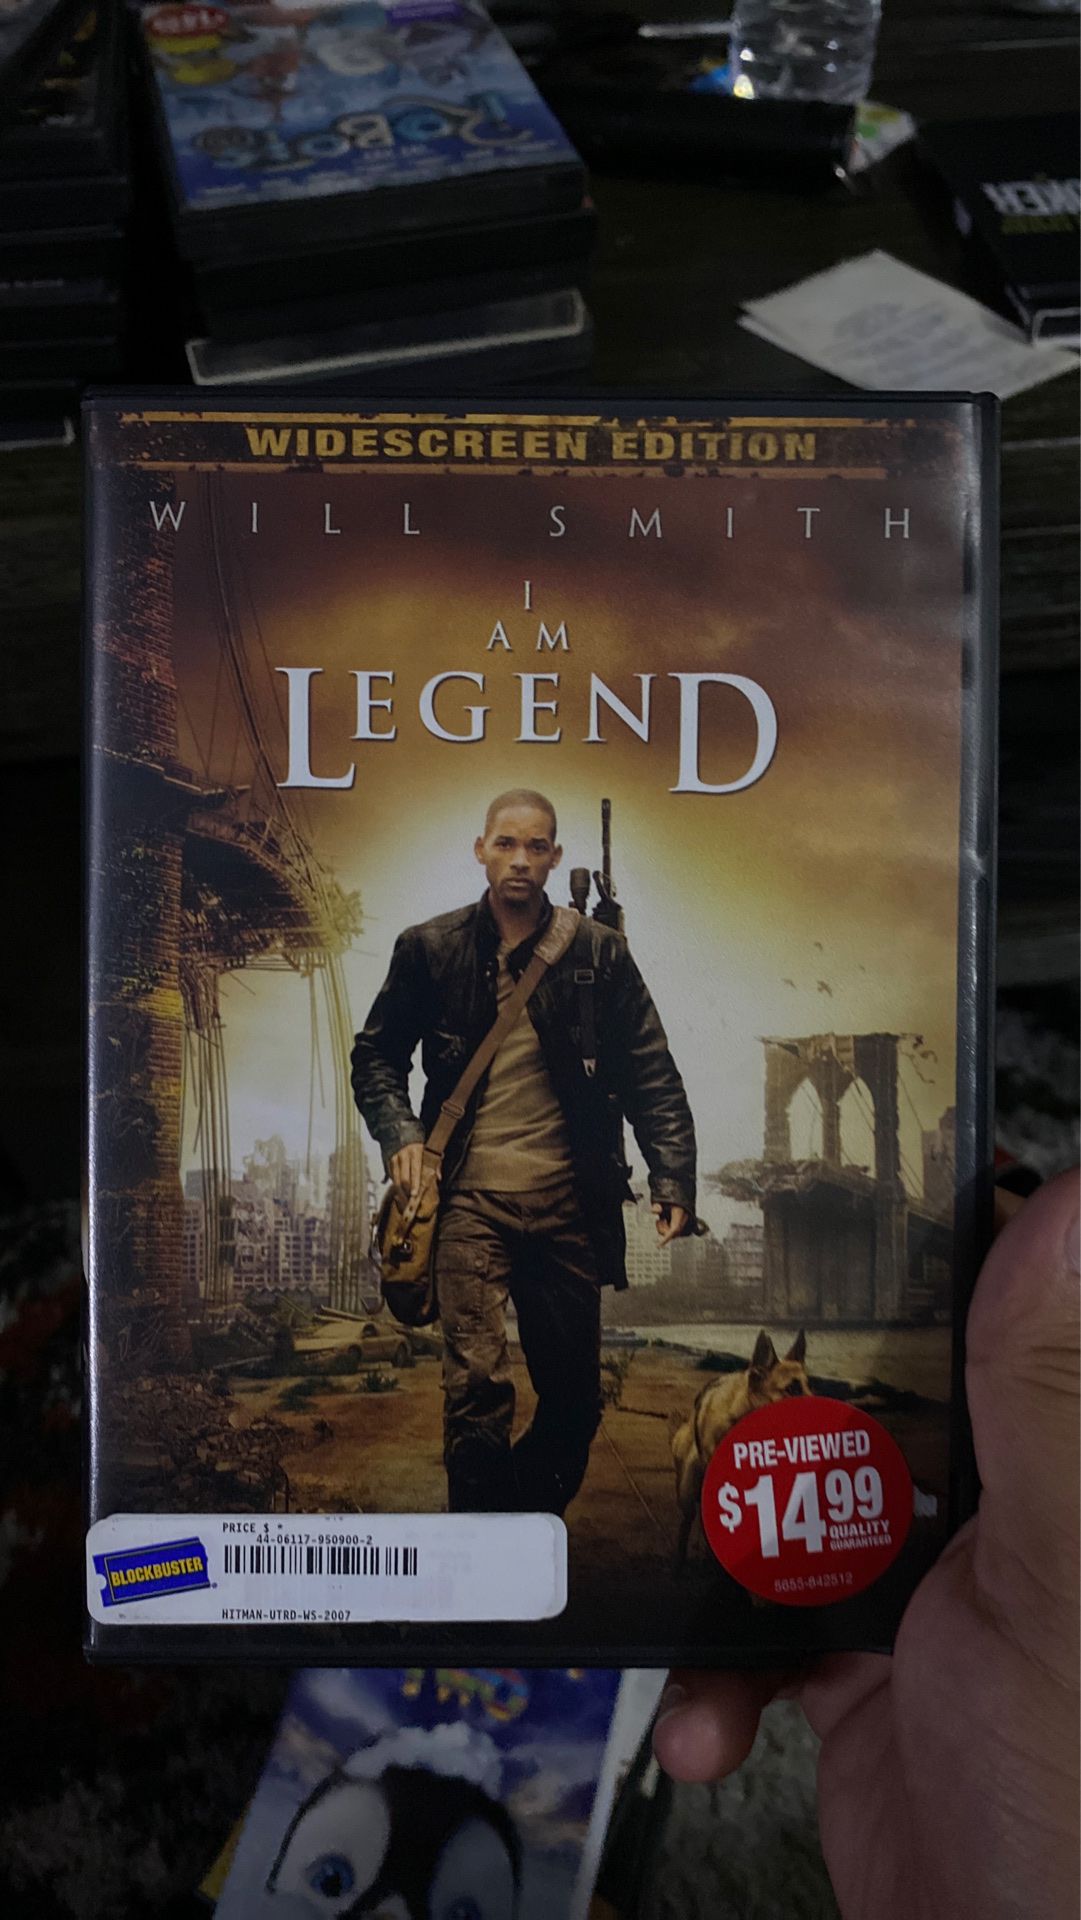 I am legend dvd